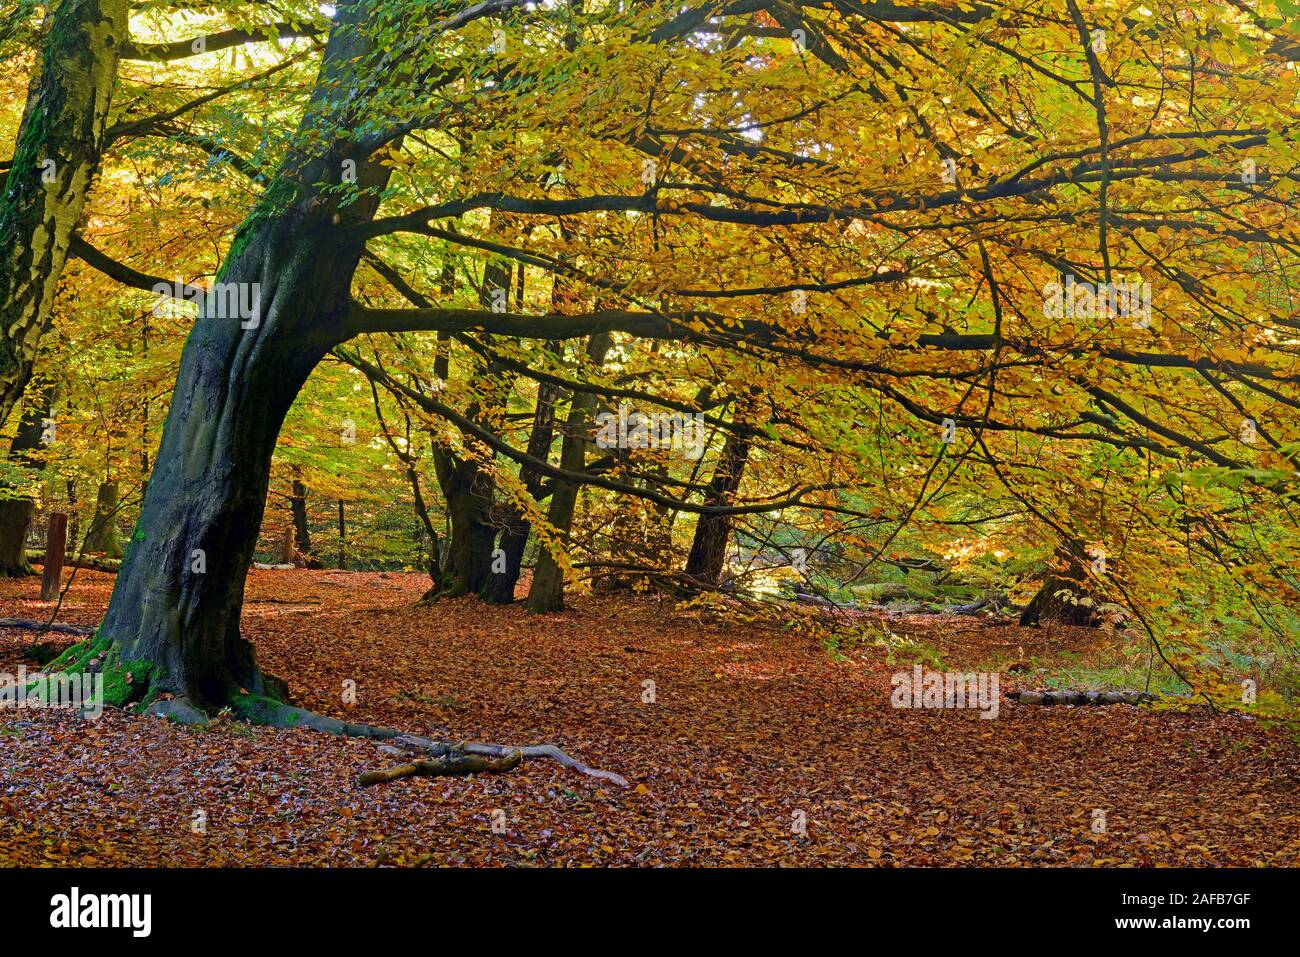 Stimmungsvolle, herbstliche Lichtsituation mit Buchen (Fagus) , Urwald Sababurg, Assia, Deutschland, Europa Foto Stock